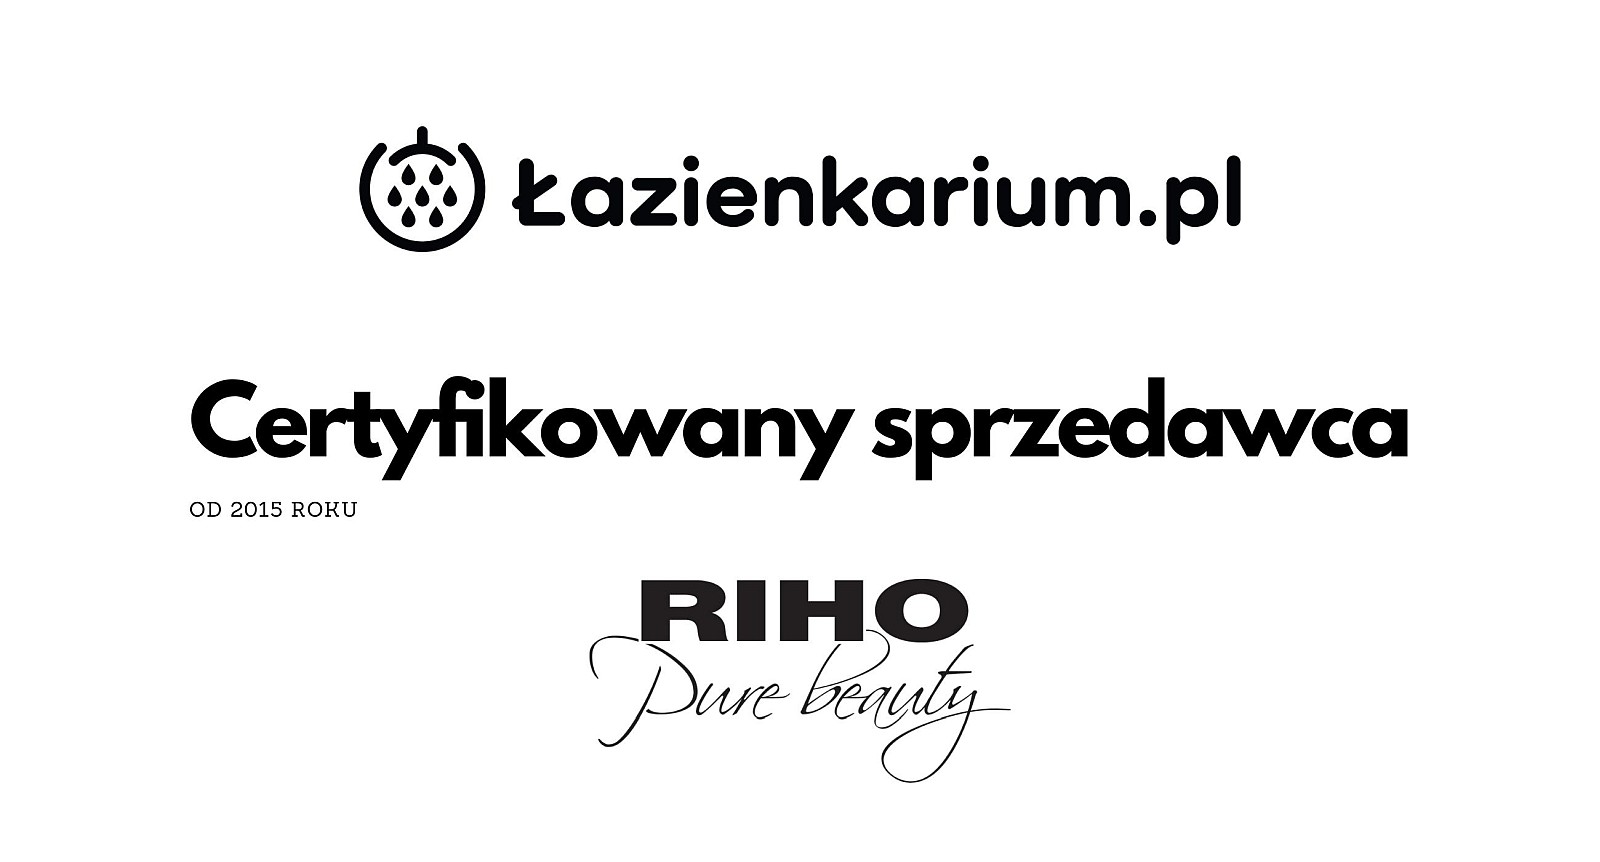 Riho Sklep Dystrybutor Polska Warszawa Kraków Tarnów - Co To za Firma? lazienkarium.pl